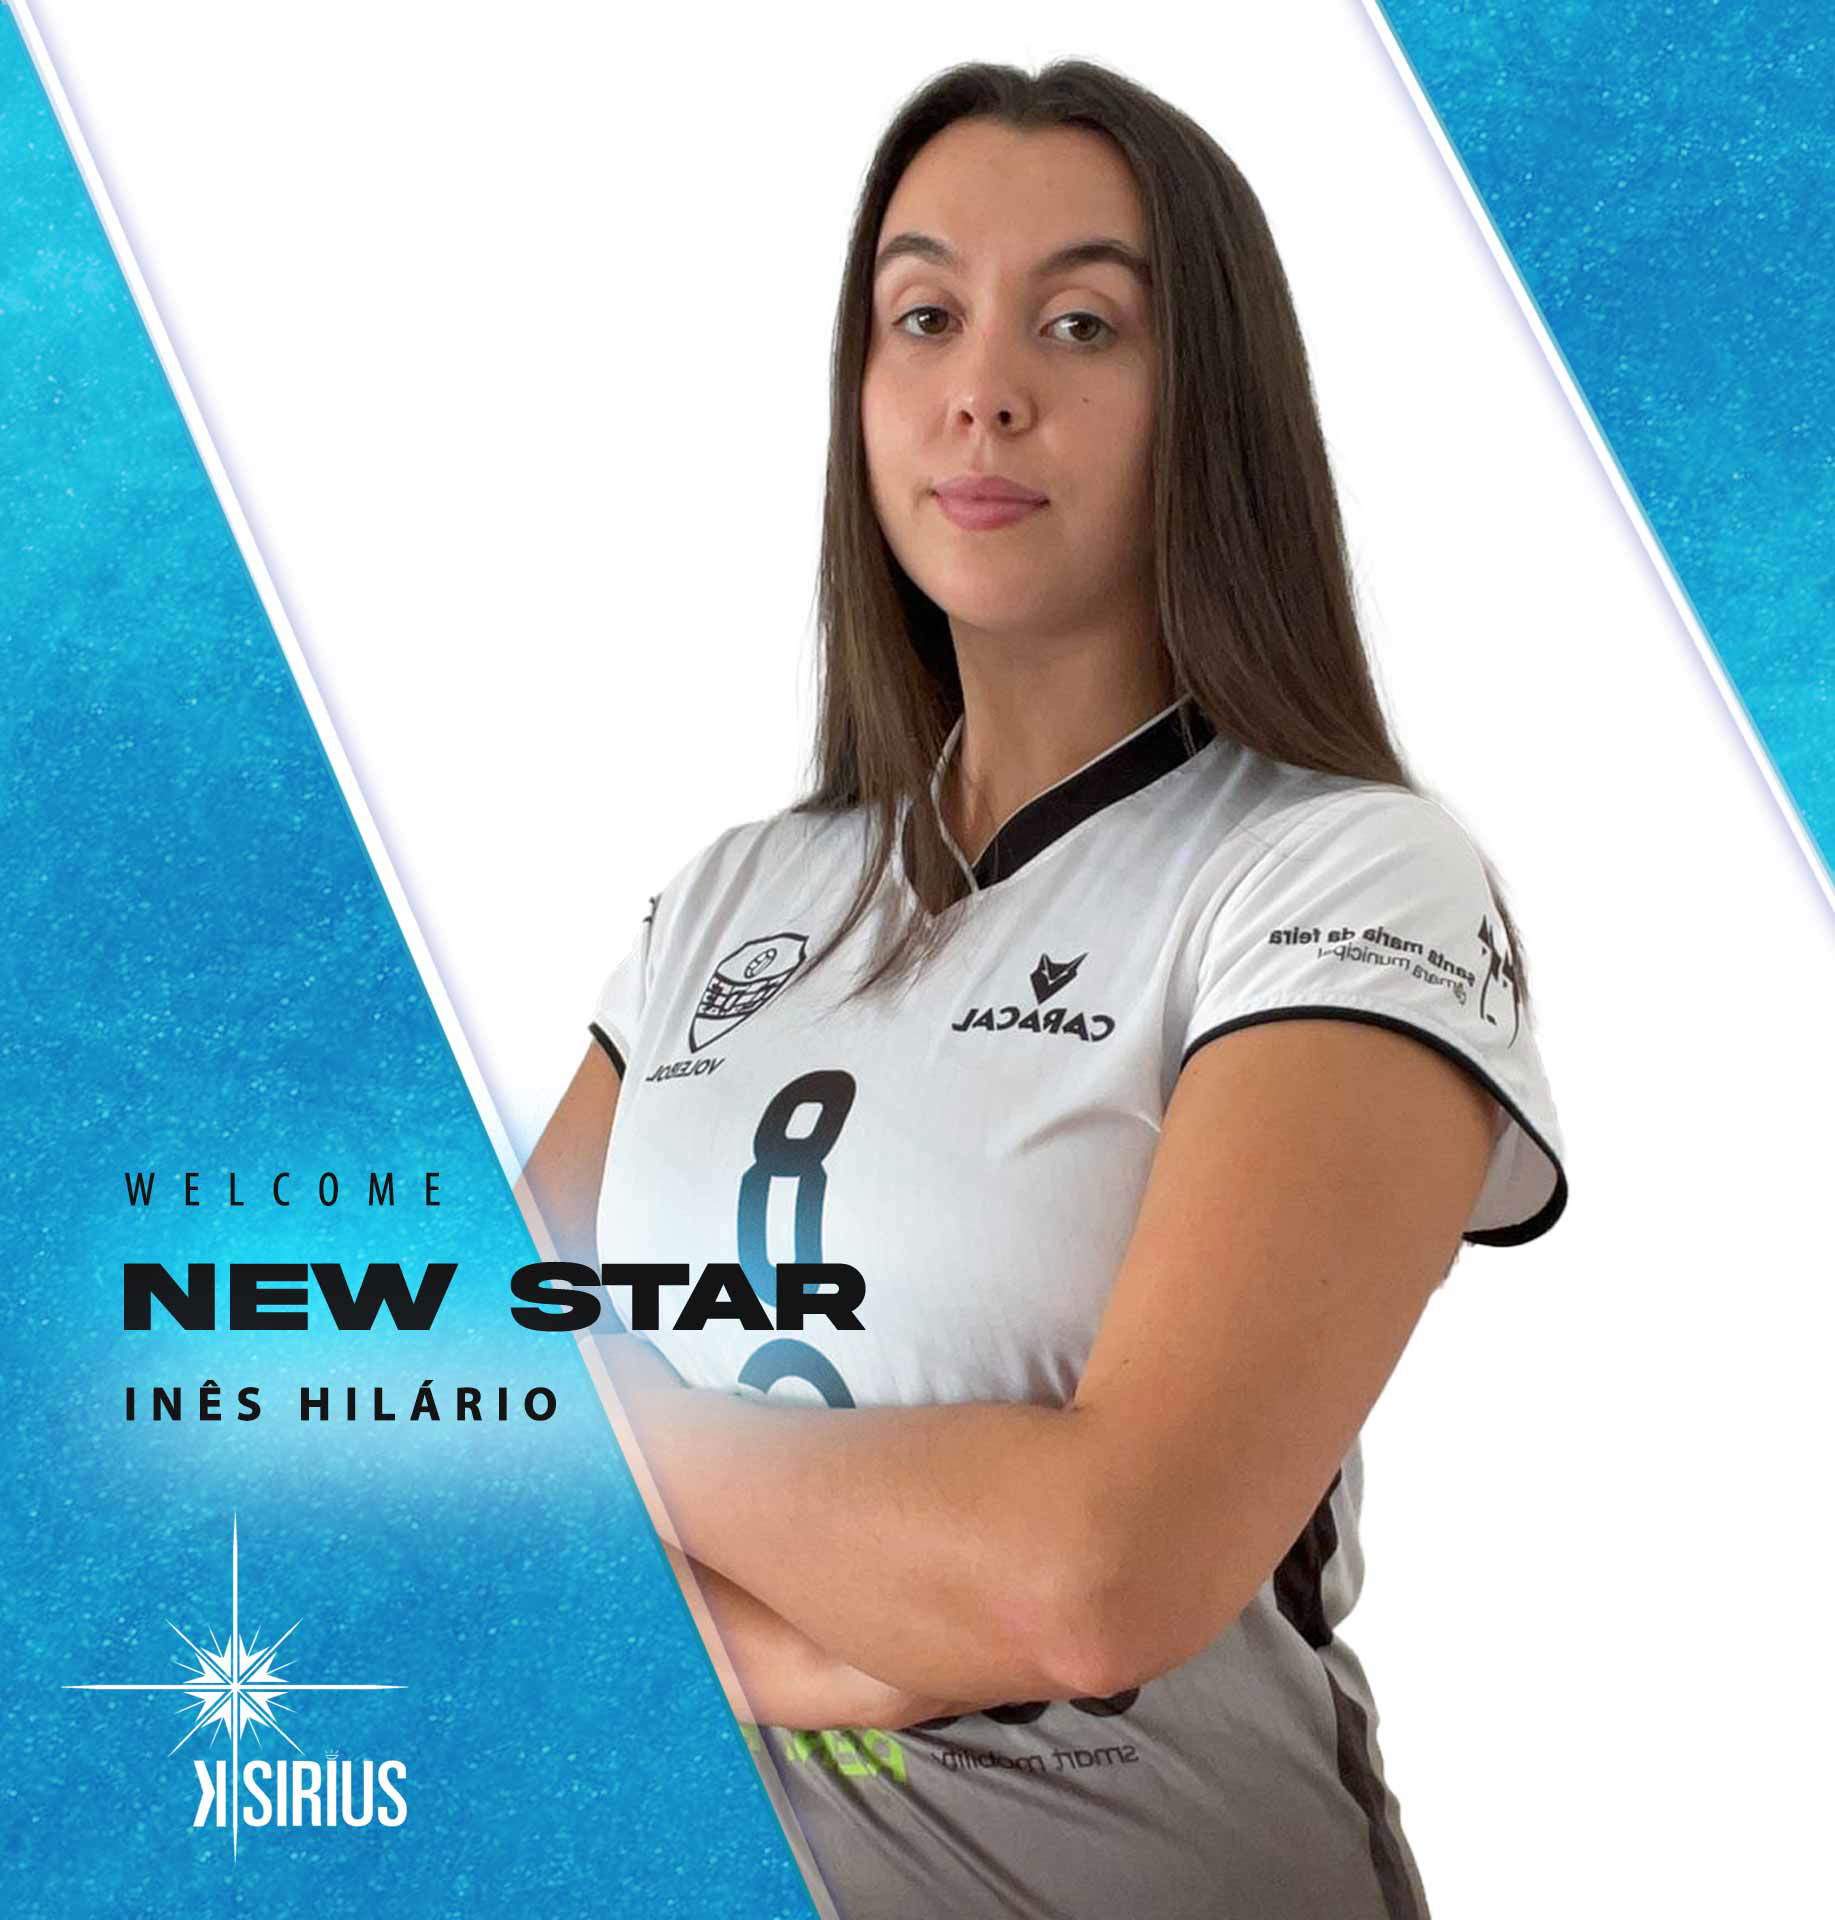 New Star: Inês Hilário (CD Fiães)